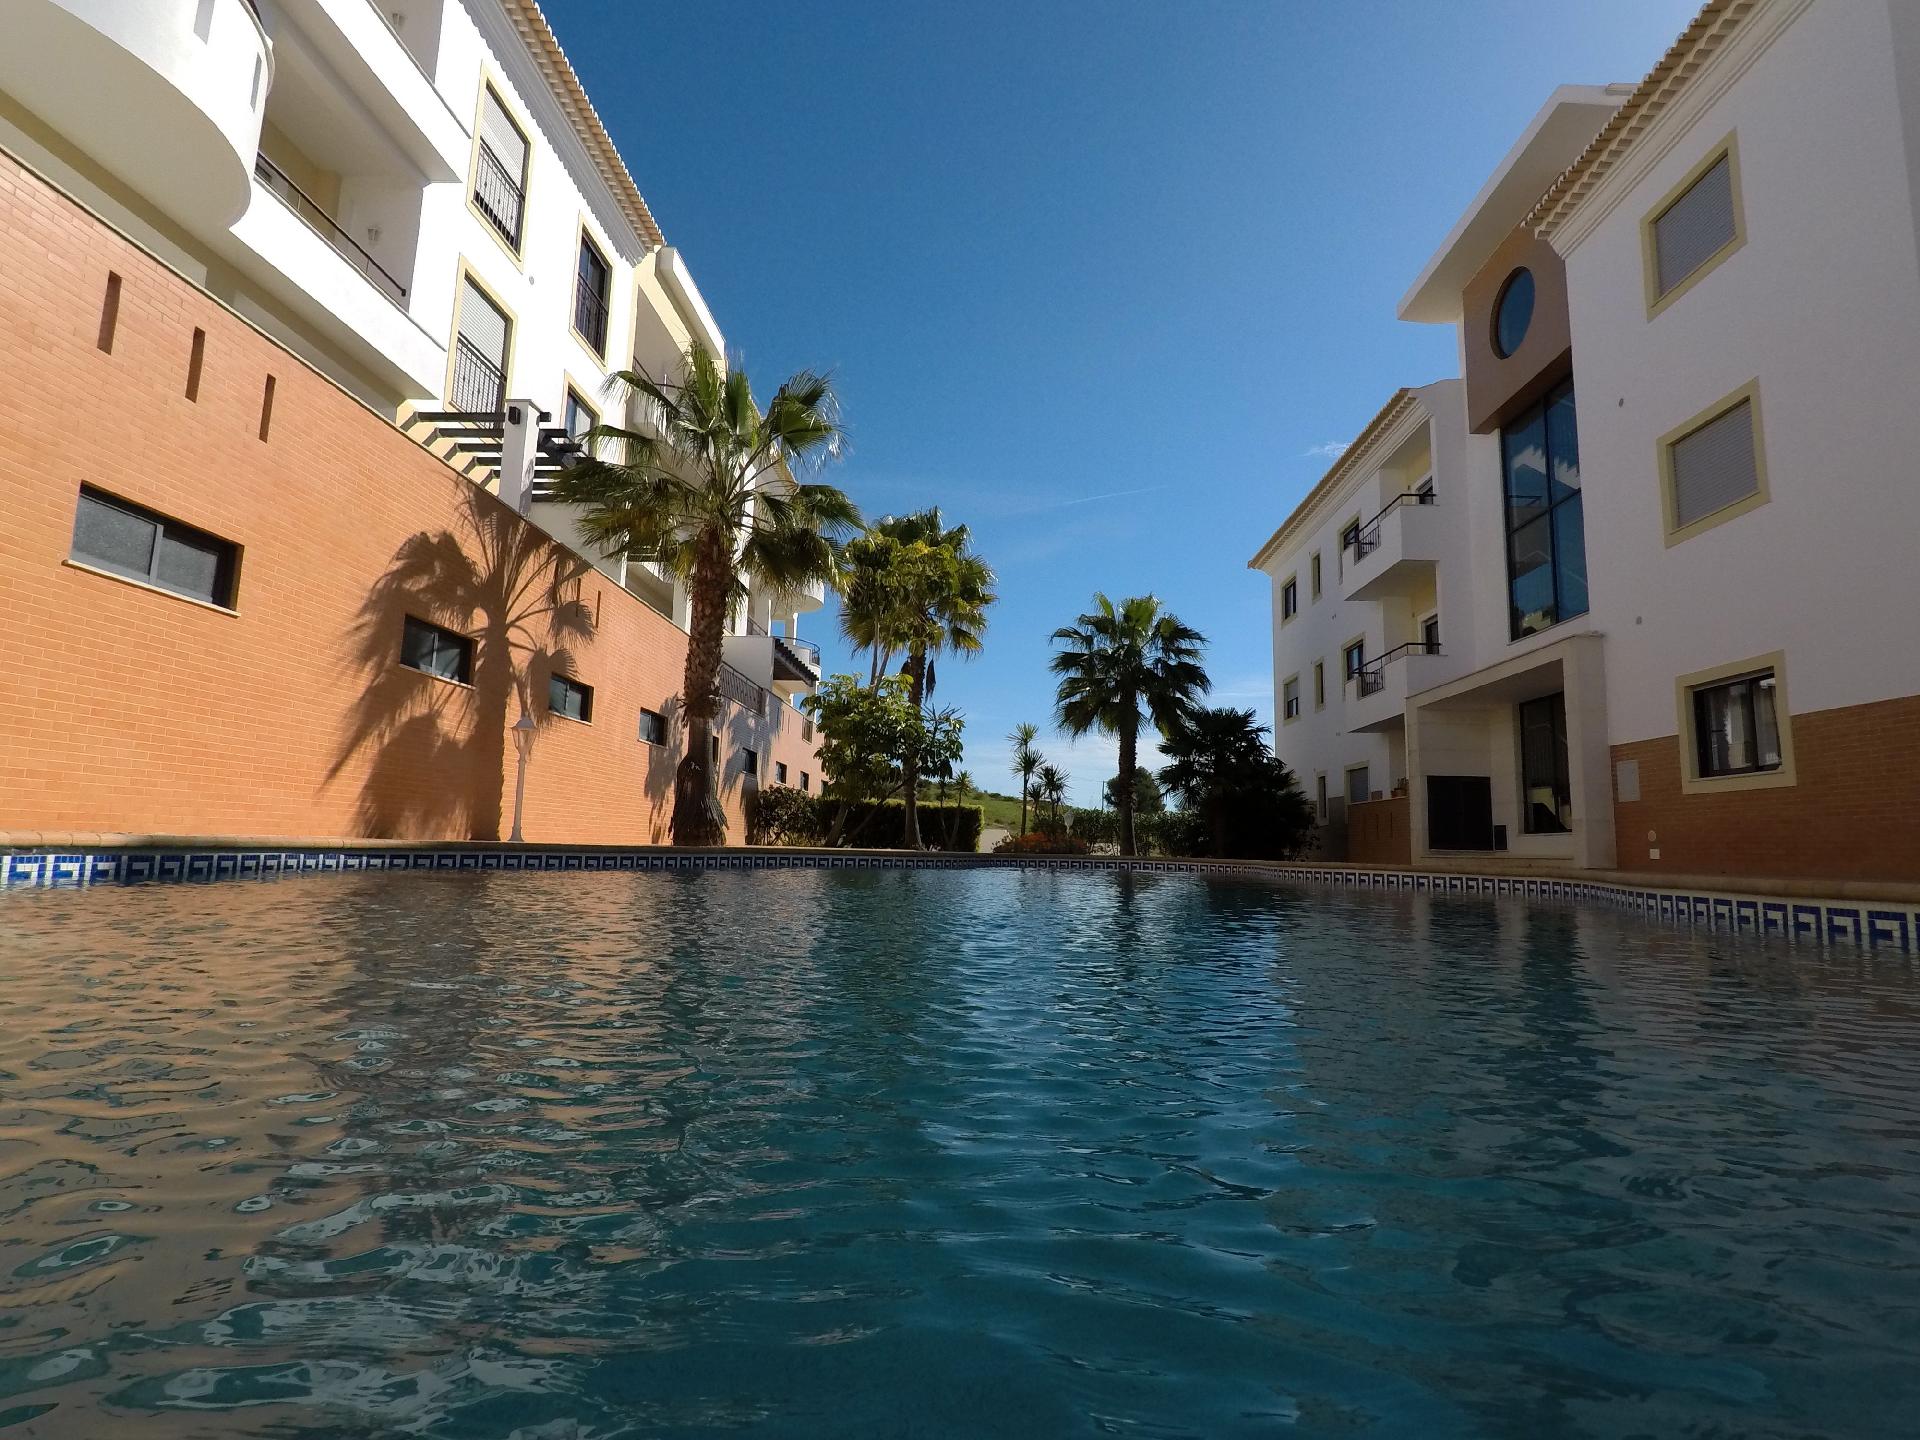 Ferienwohnung für 2 Personen ca. 76 m² i Ferienwohnung in Portugal